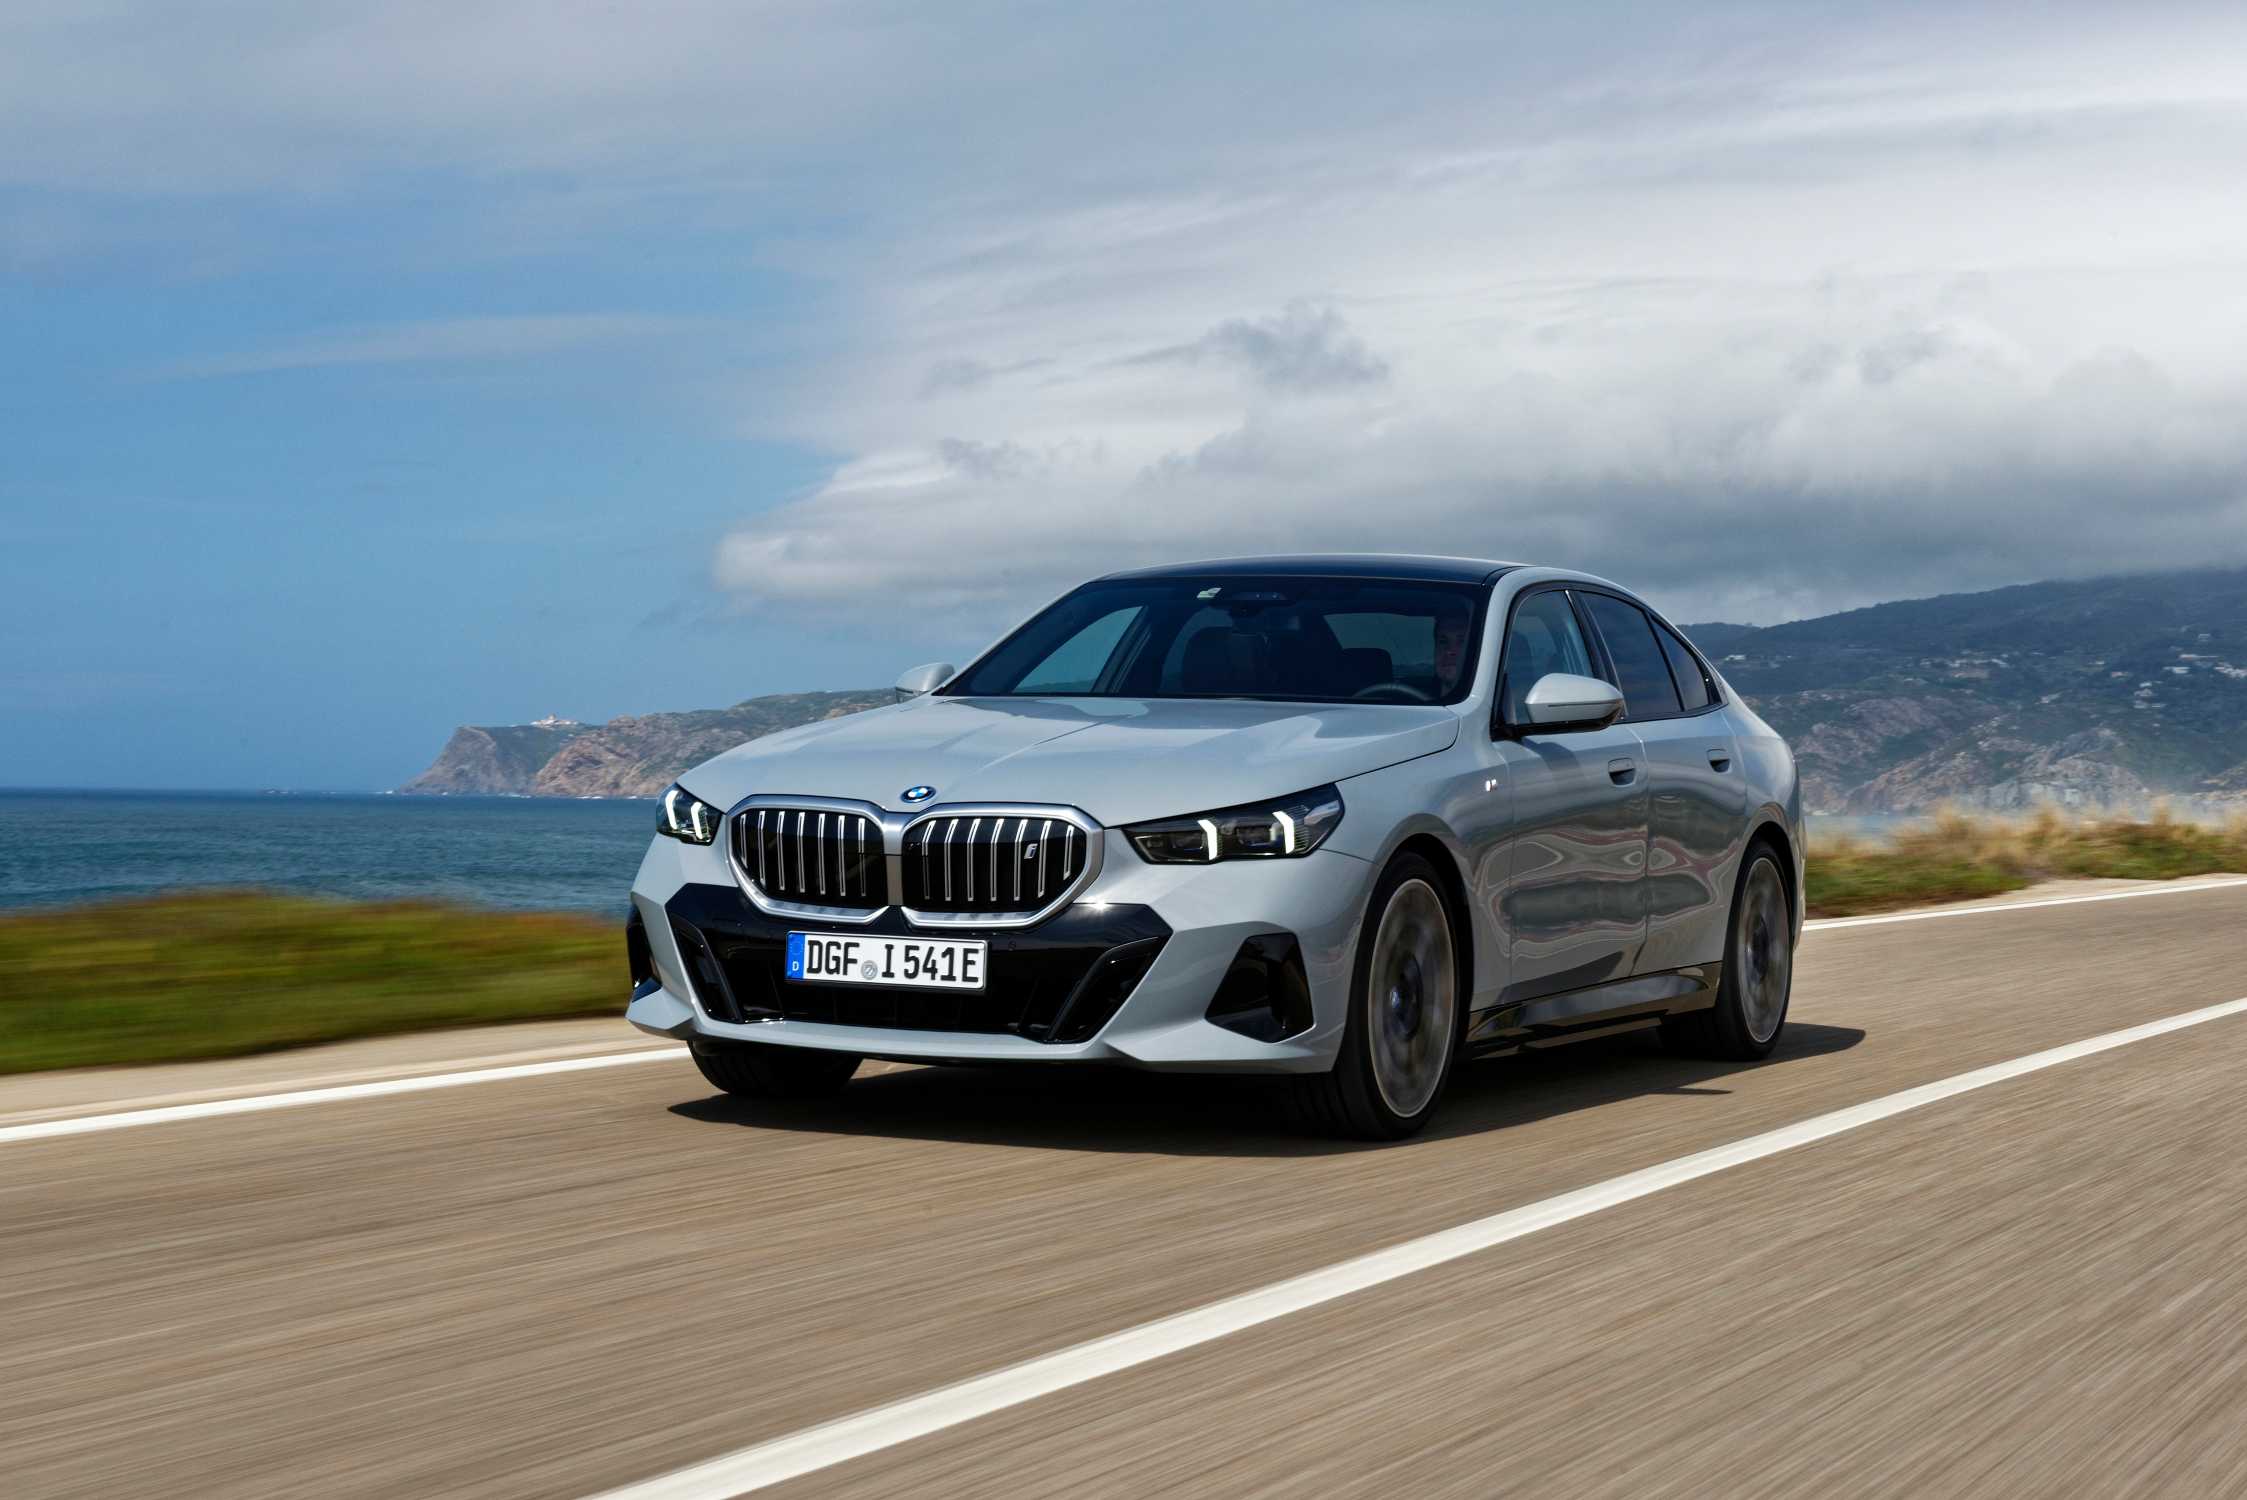 BMW propose une nouvelle peinture personnalisée